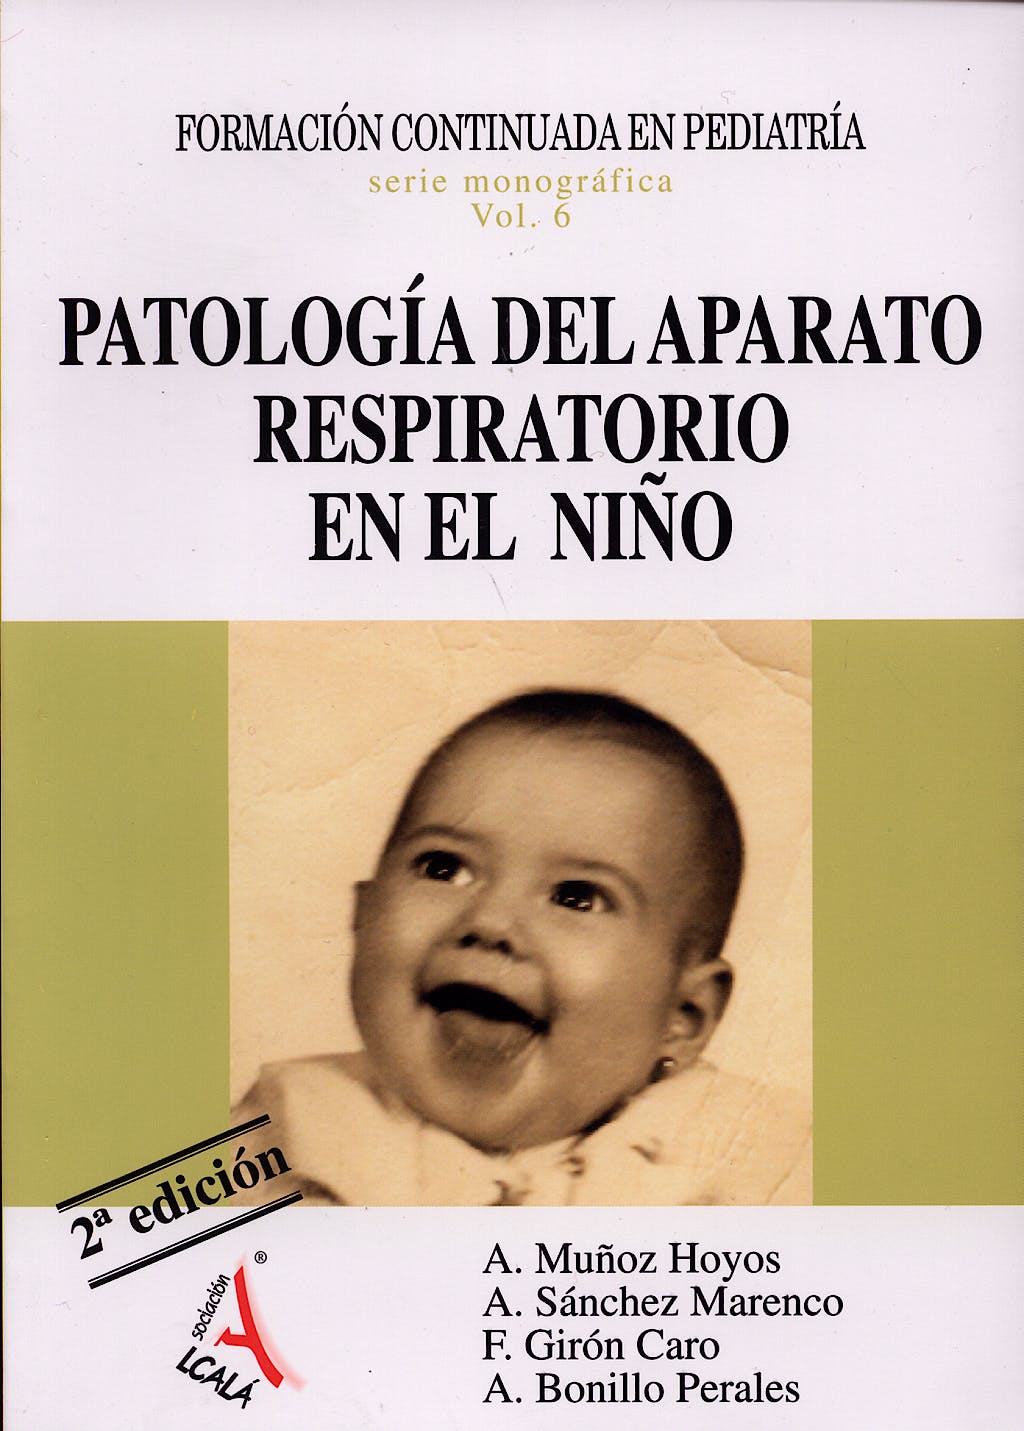 Imagen de portada del libro Patología del aparato respiratorio en el niño